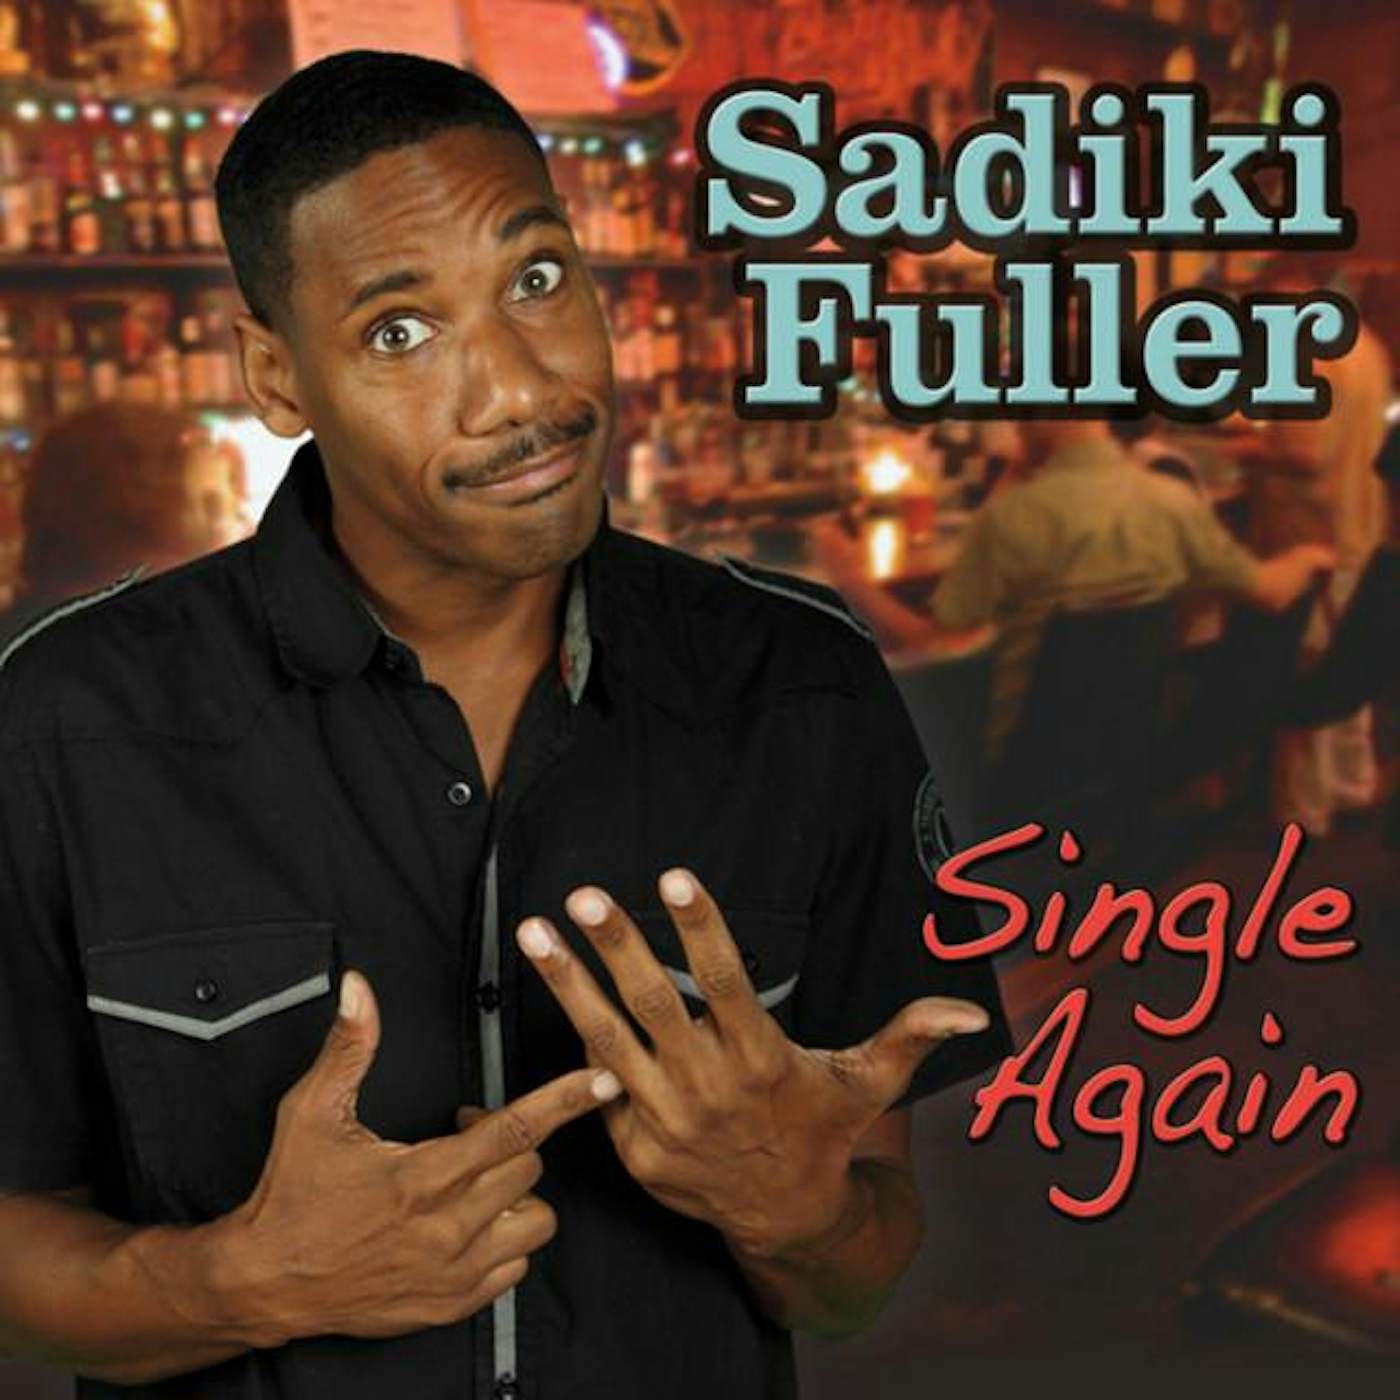 Sadiki Fuller